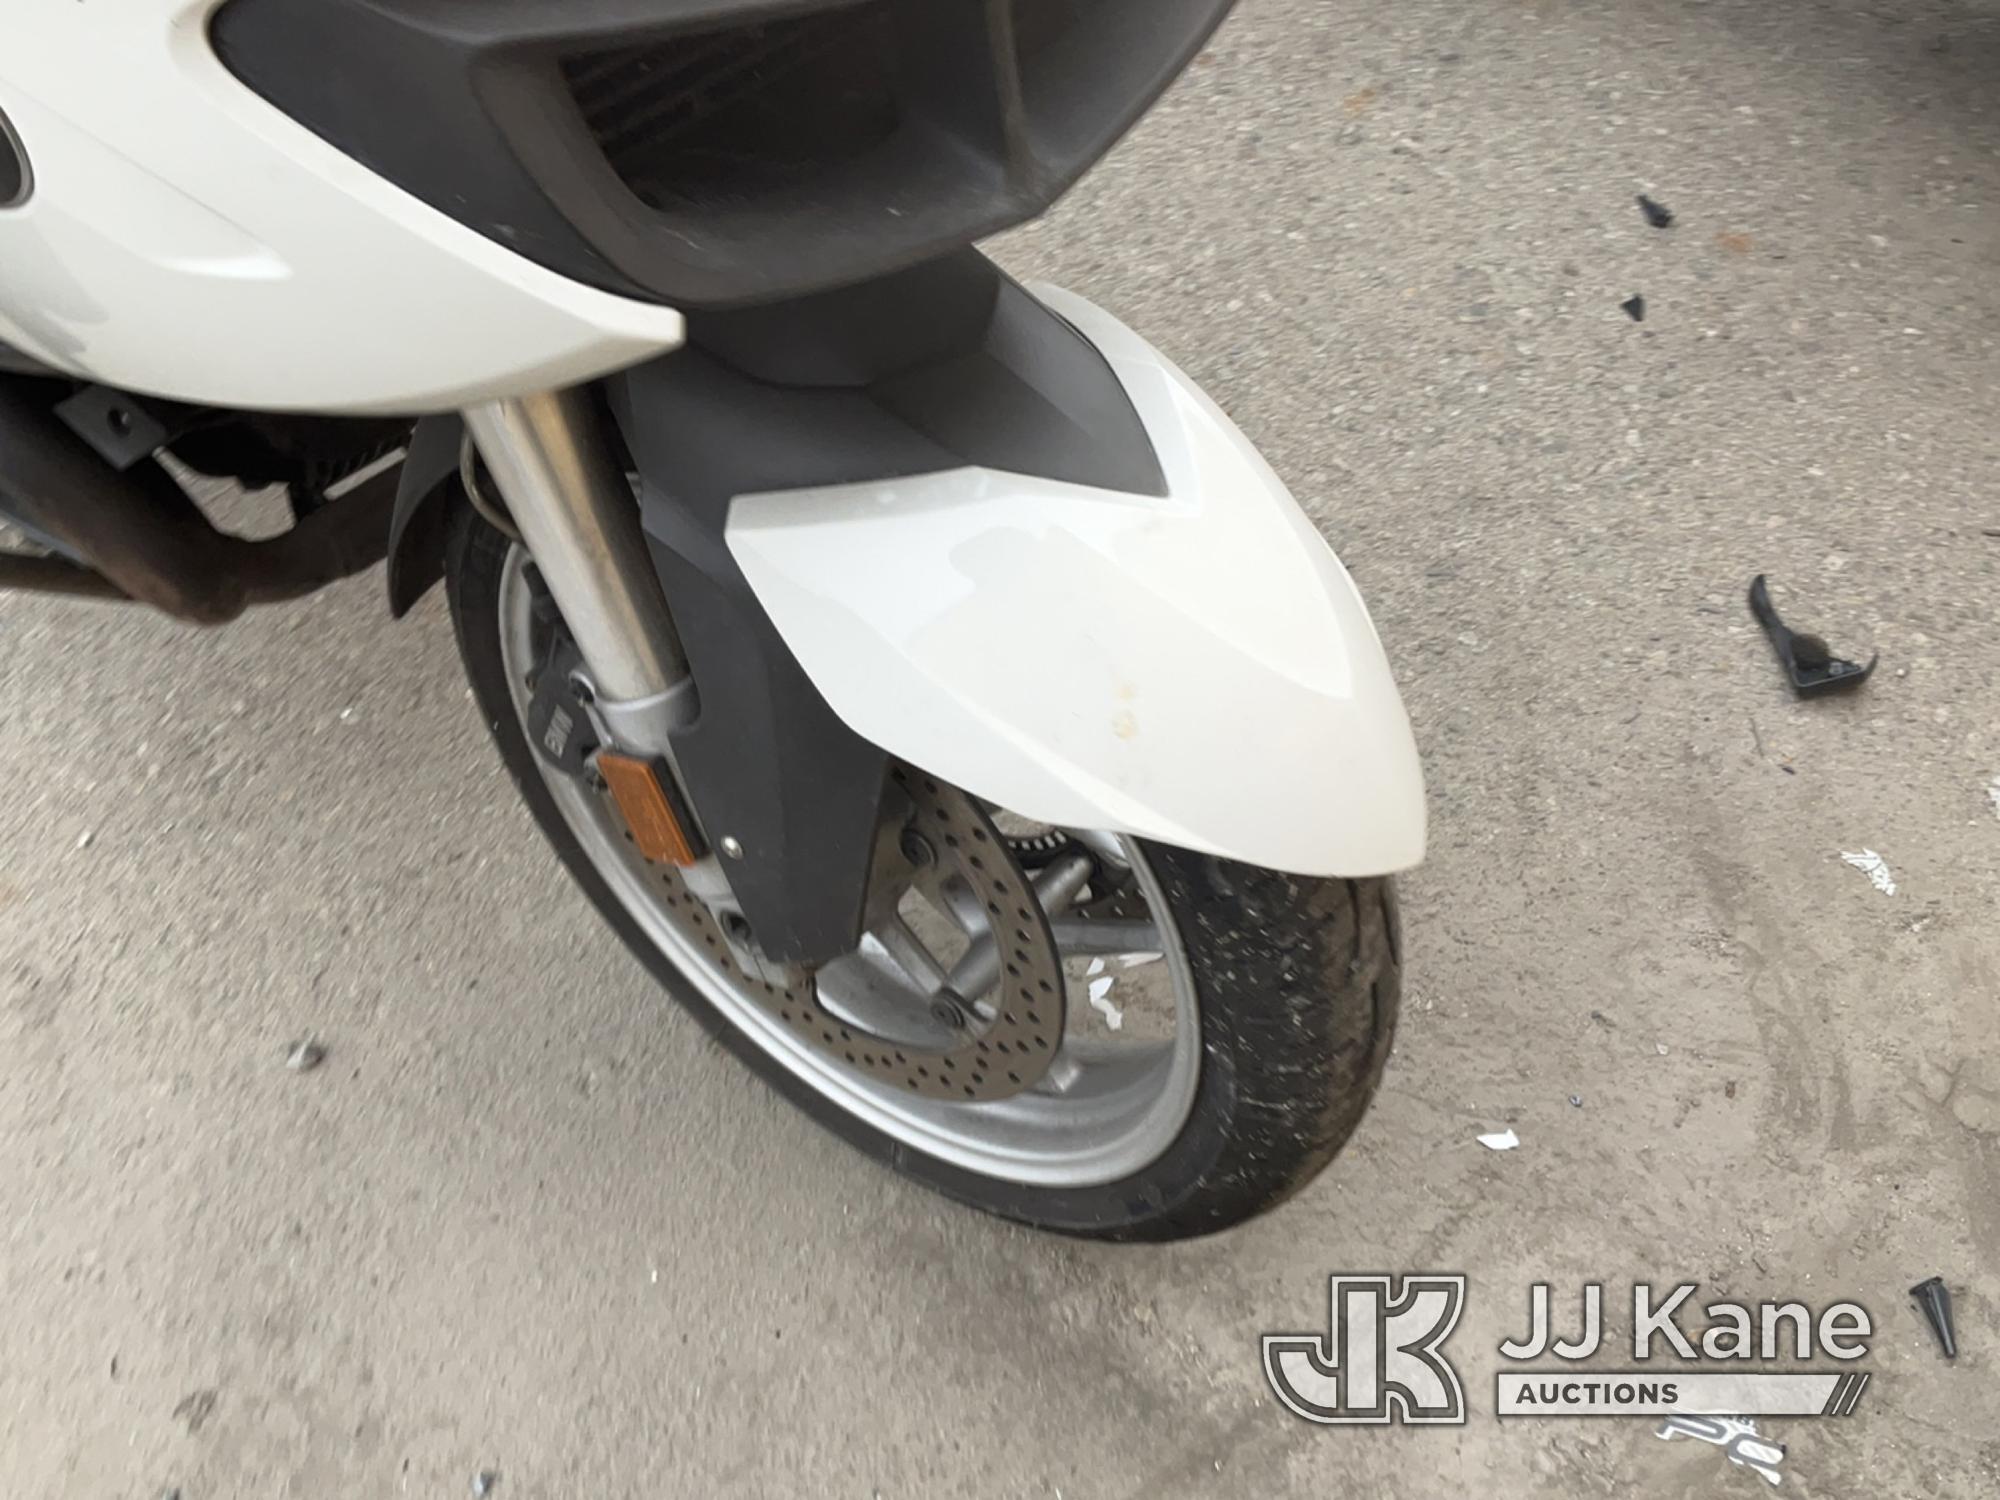 (Jurupa Valley, CA) 2012 BMW Motorcycle Runs & Moves, Running Rough , Smoking , Missing Parts